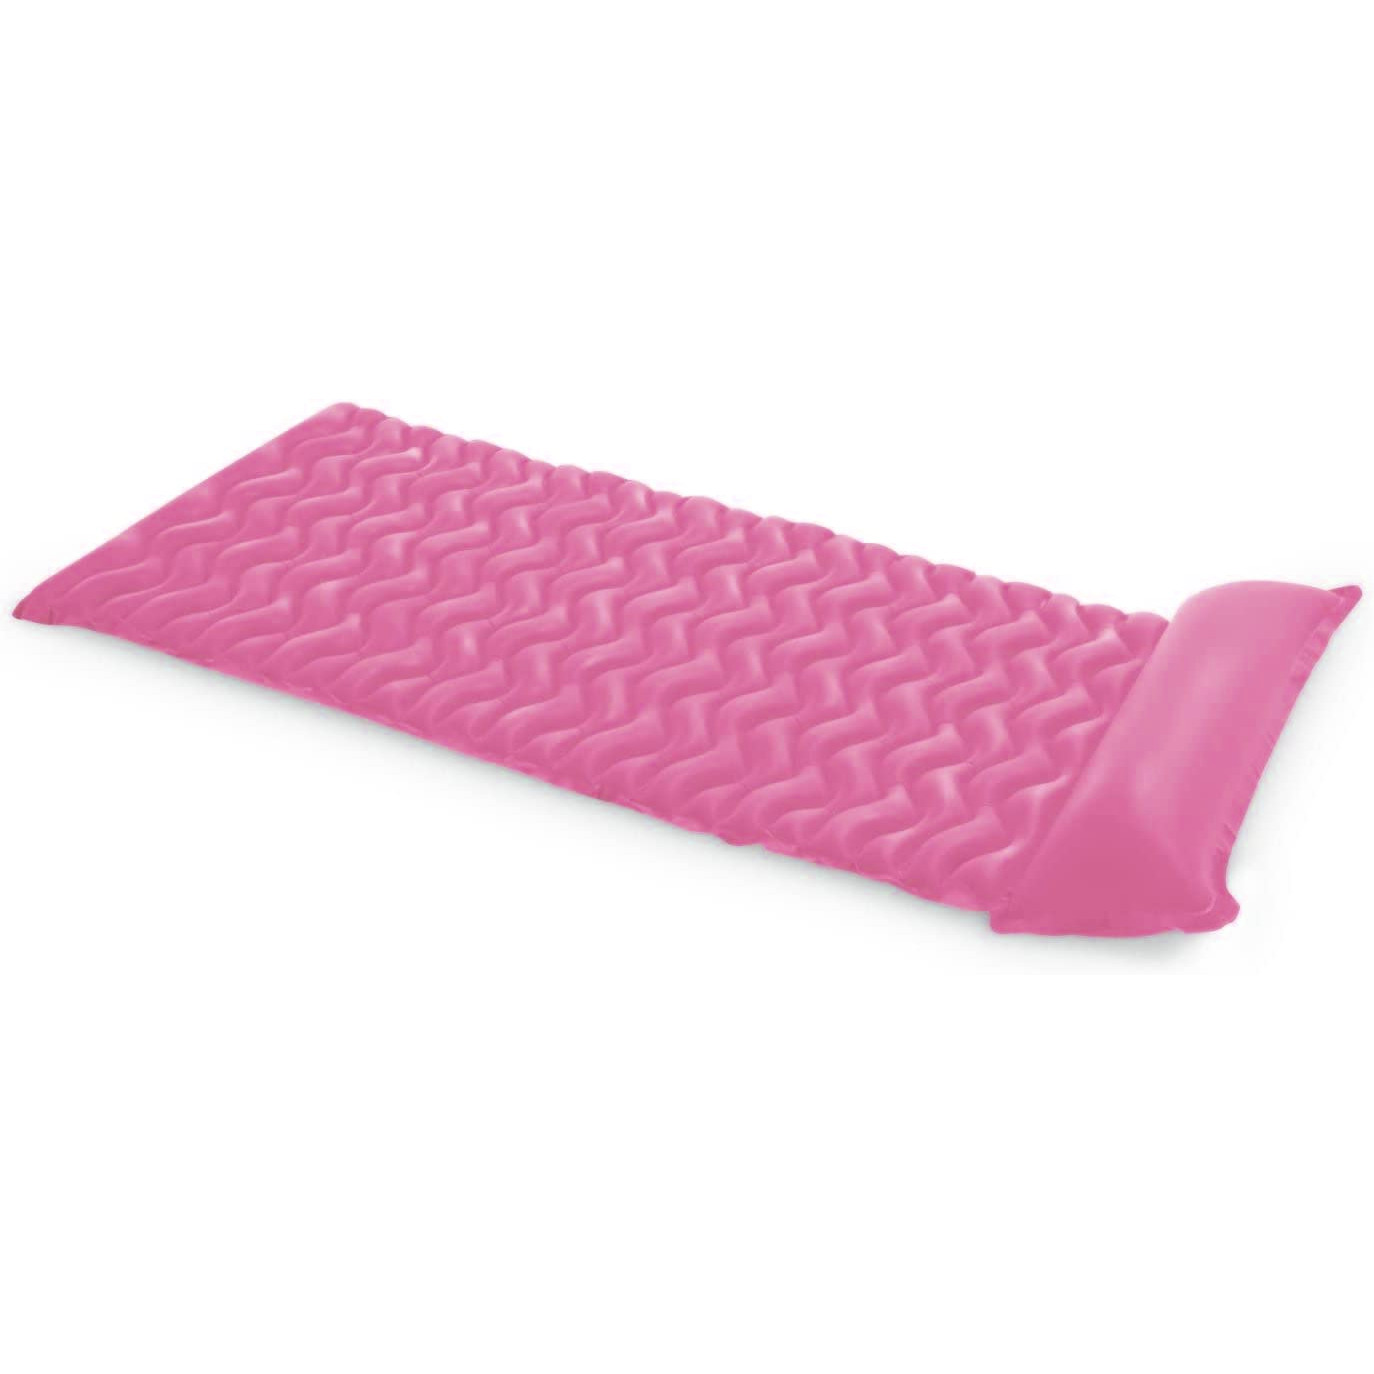 INTEX 58807EU - (zusammenrollbar, pink 229x86cm) Tote-n-Float - Luftmatratze Wasserspielzeug